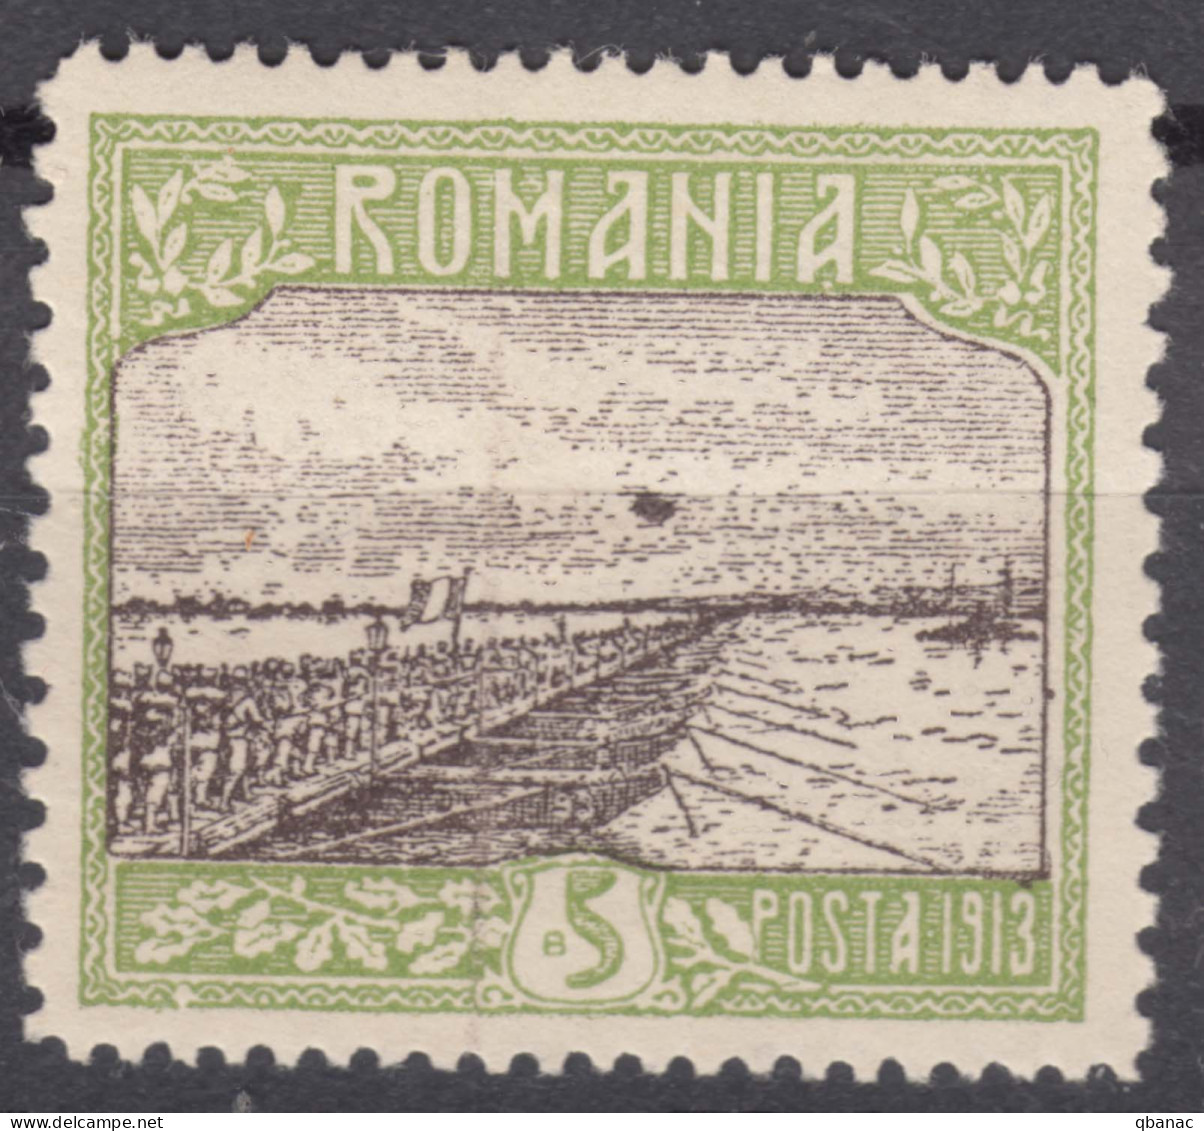 Romania 1913 Mi#229 Mint Hinged, Error - Black Point - Nuovi